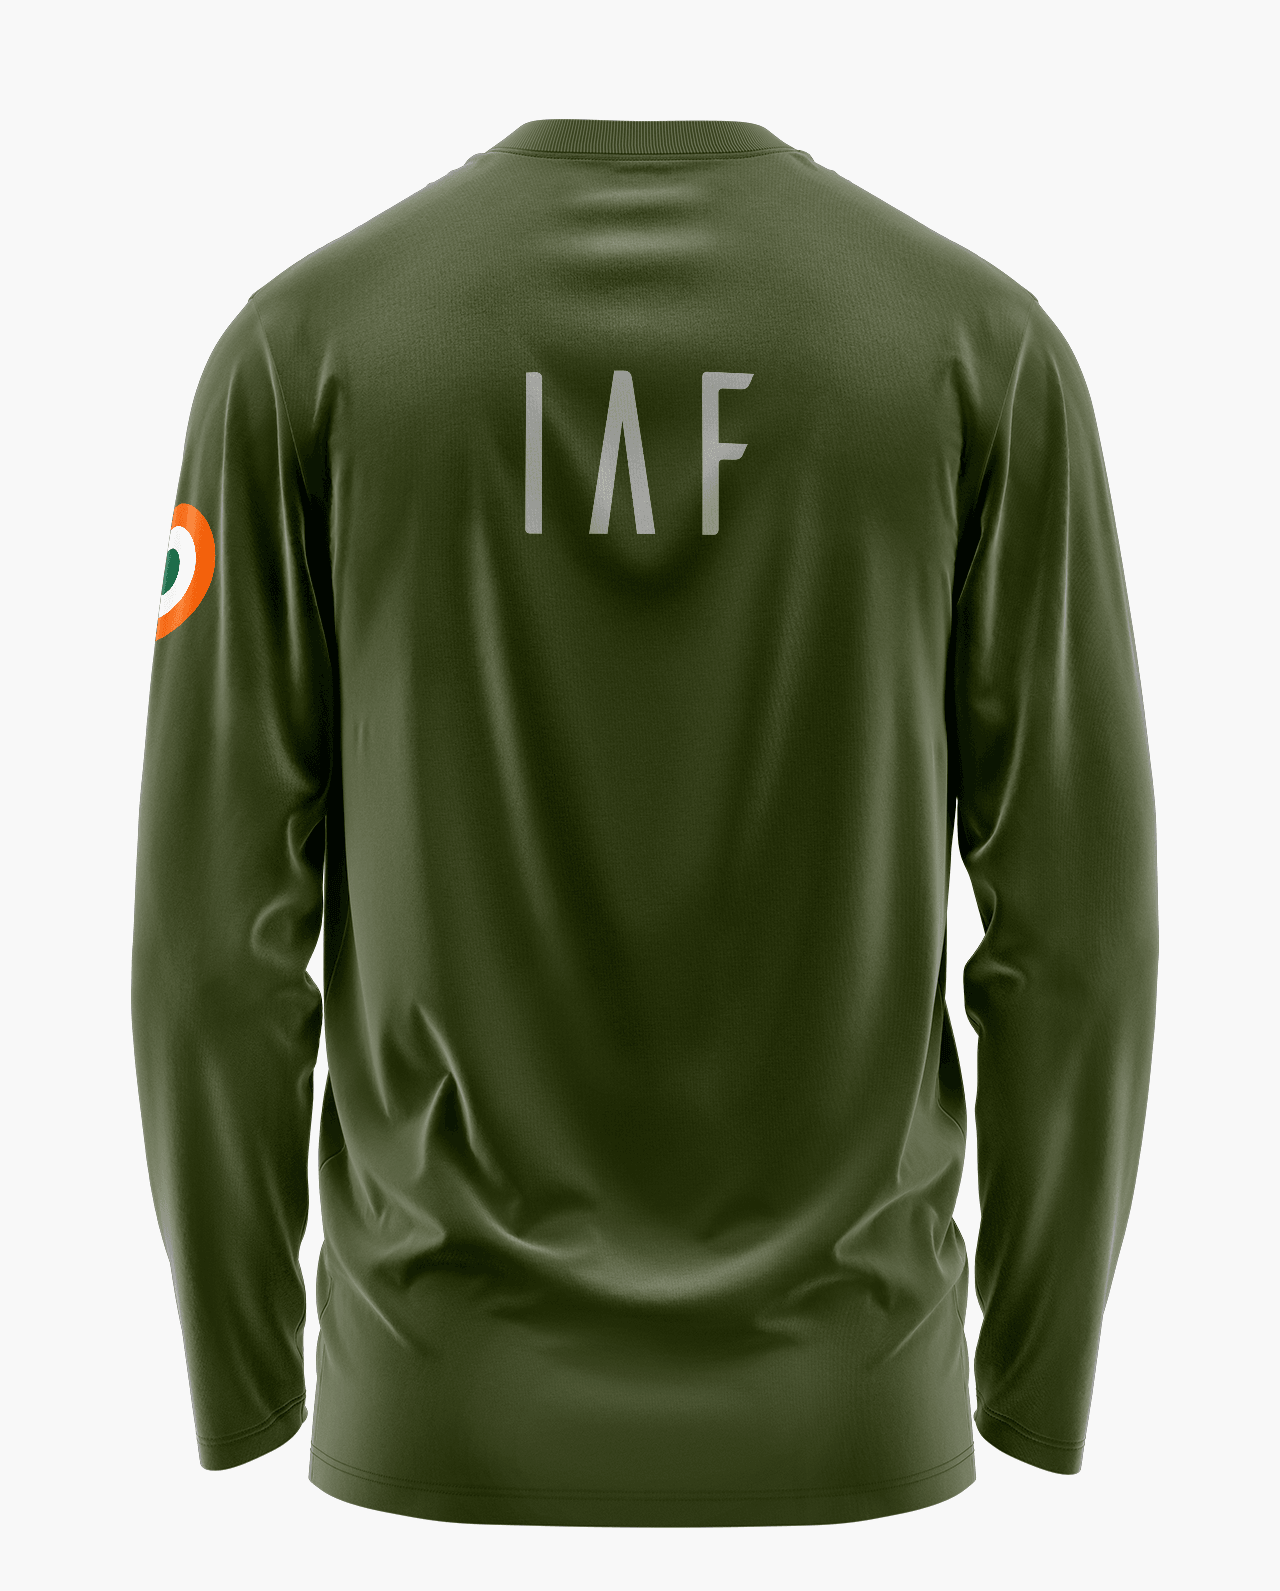 IAF Touch The Sky With Glory Full Sleeve T-Shirt - Aero Armour